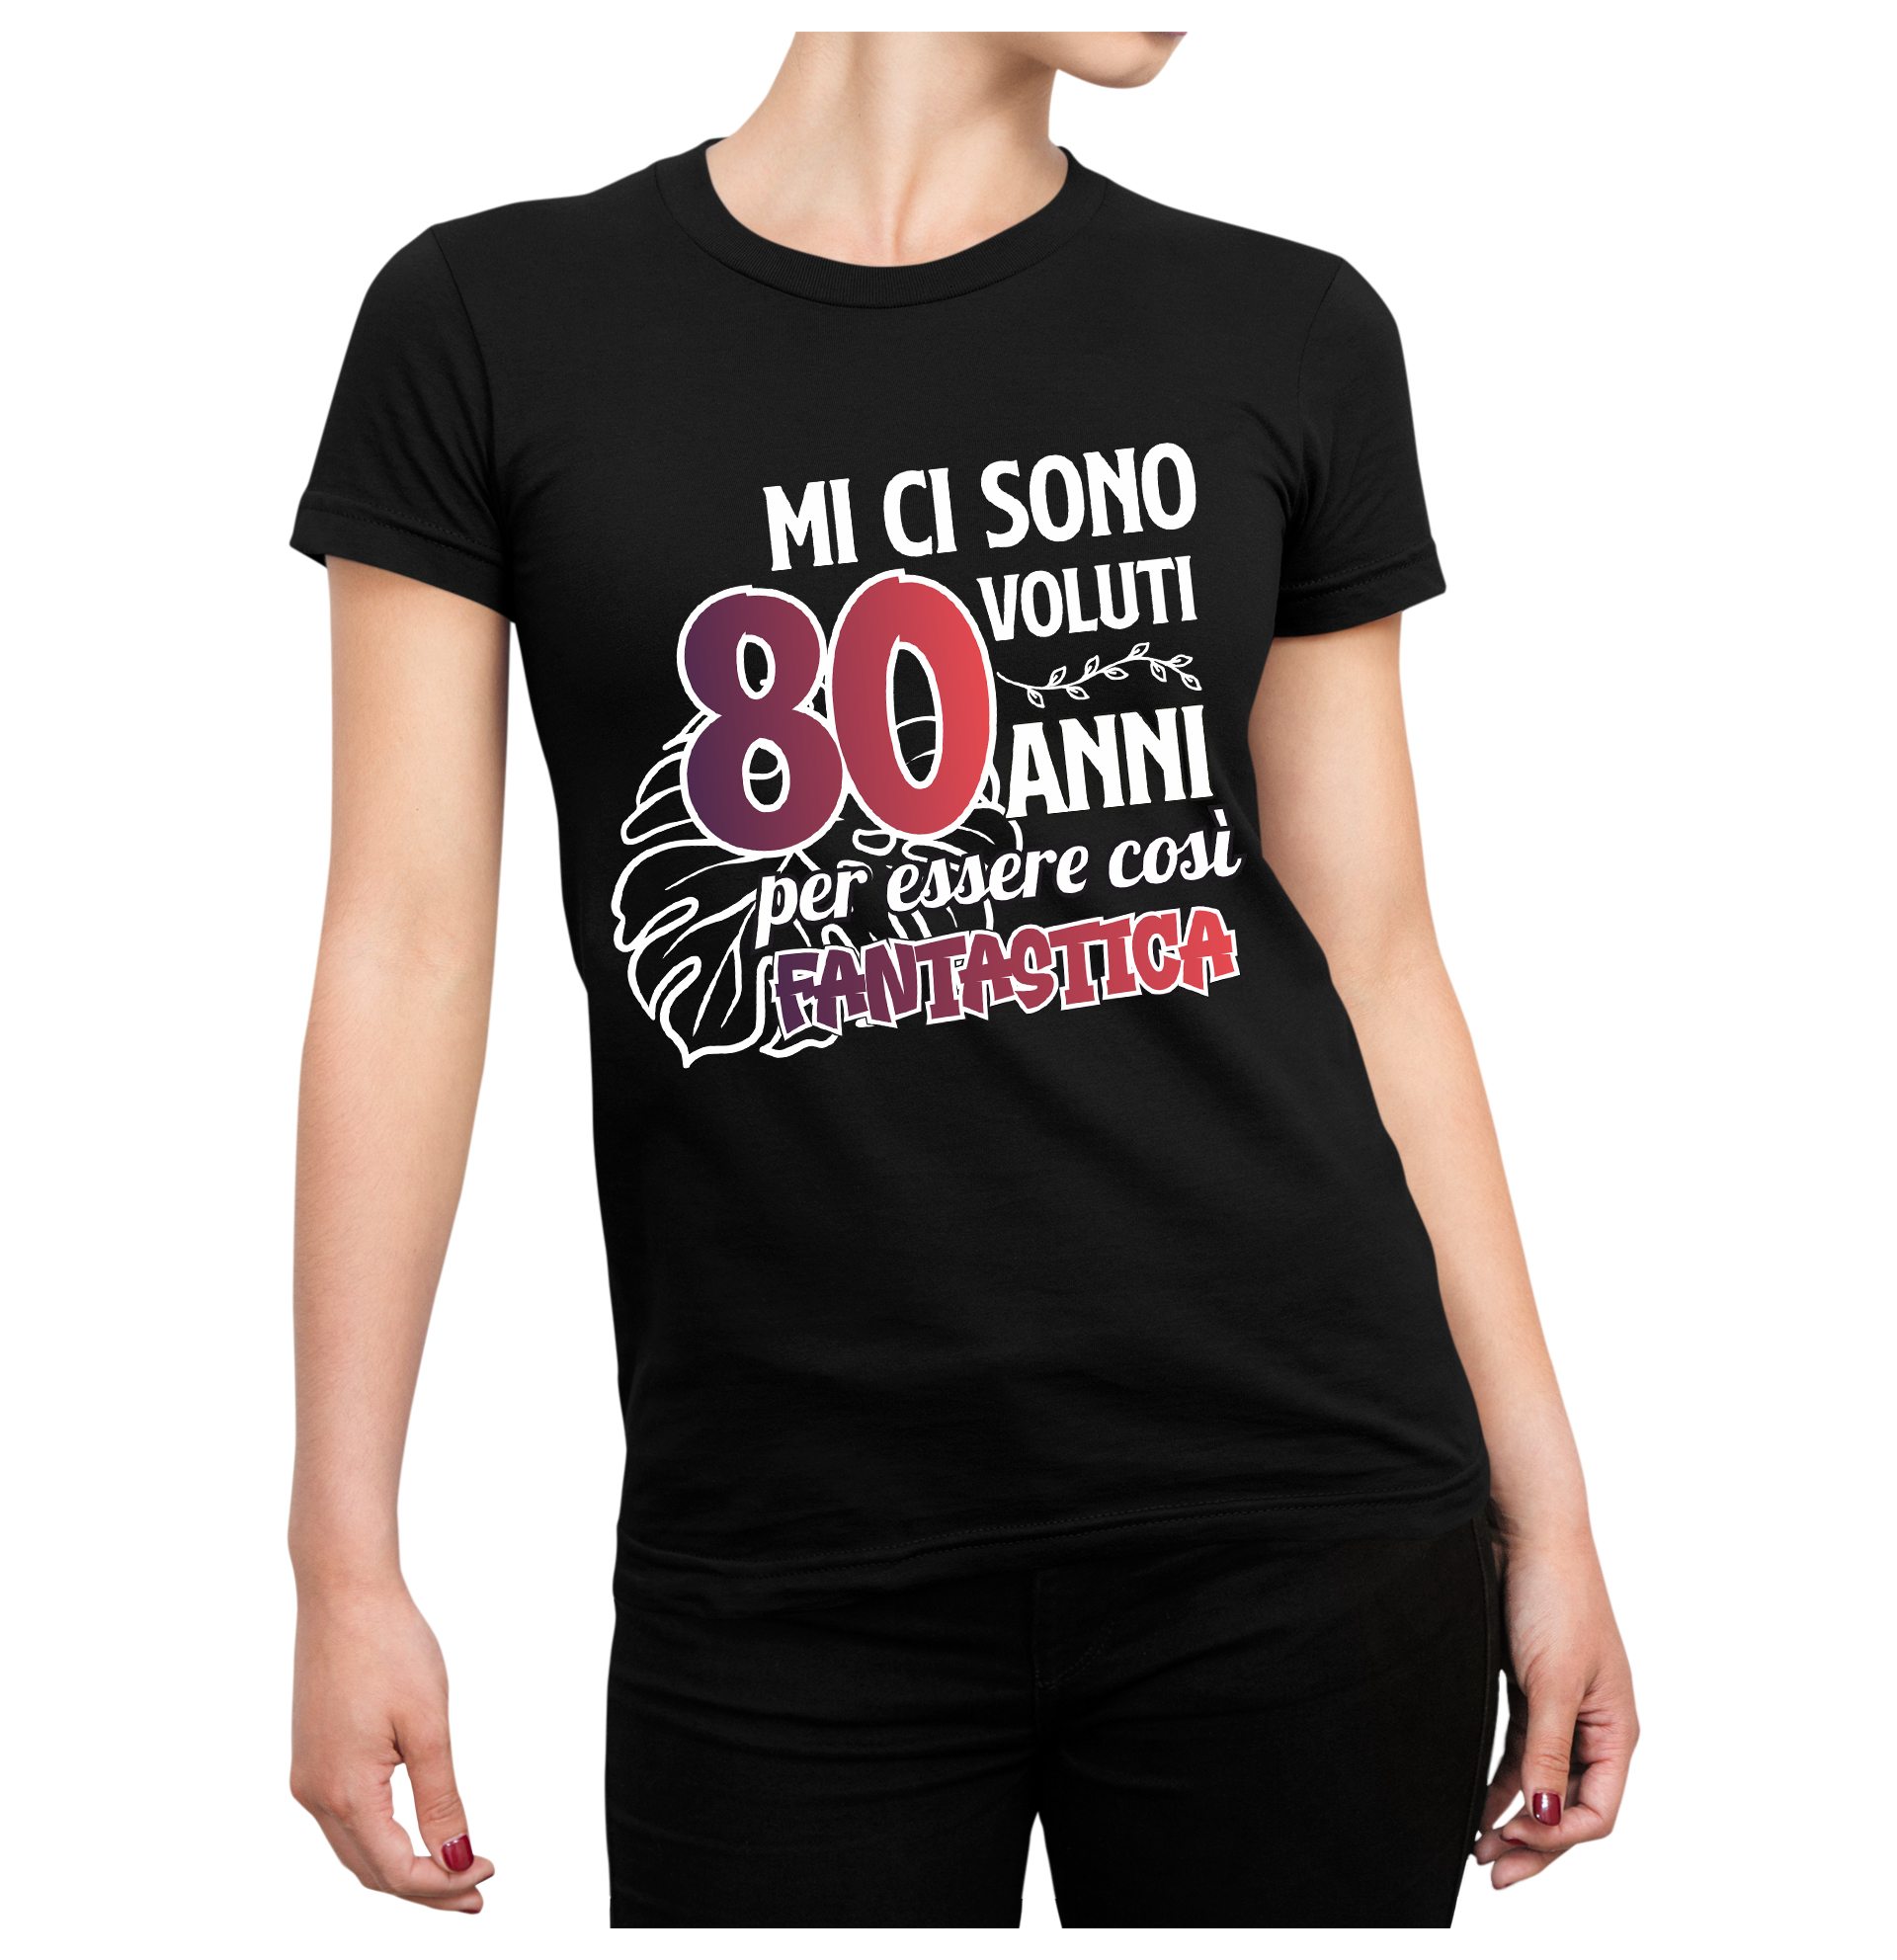 Tshirt Compleanno 80 Anni Donna Estate Mi ci sono Voluti 80 Anni